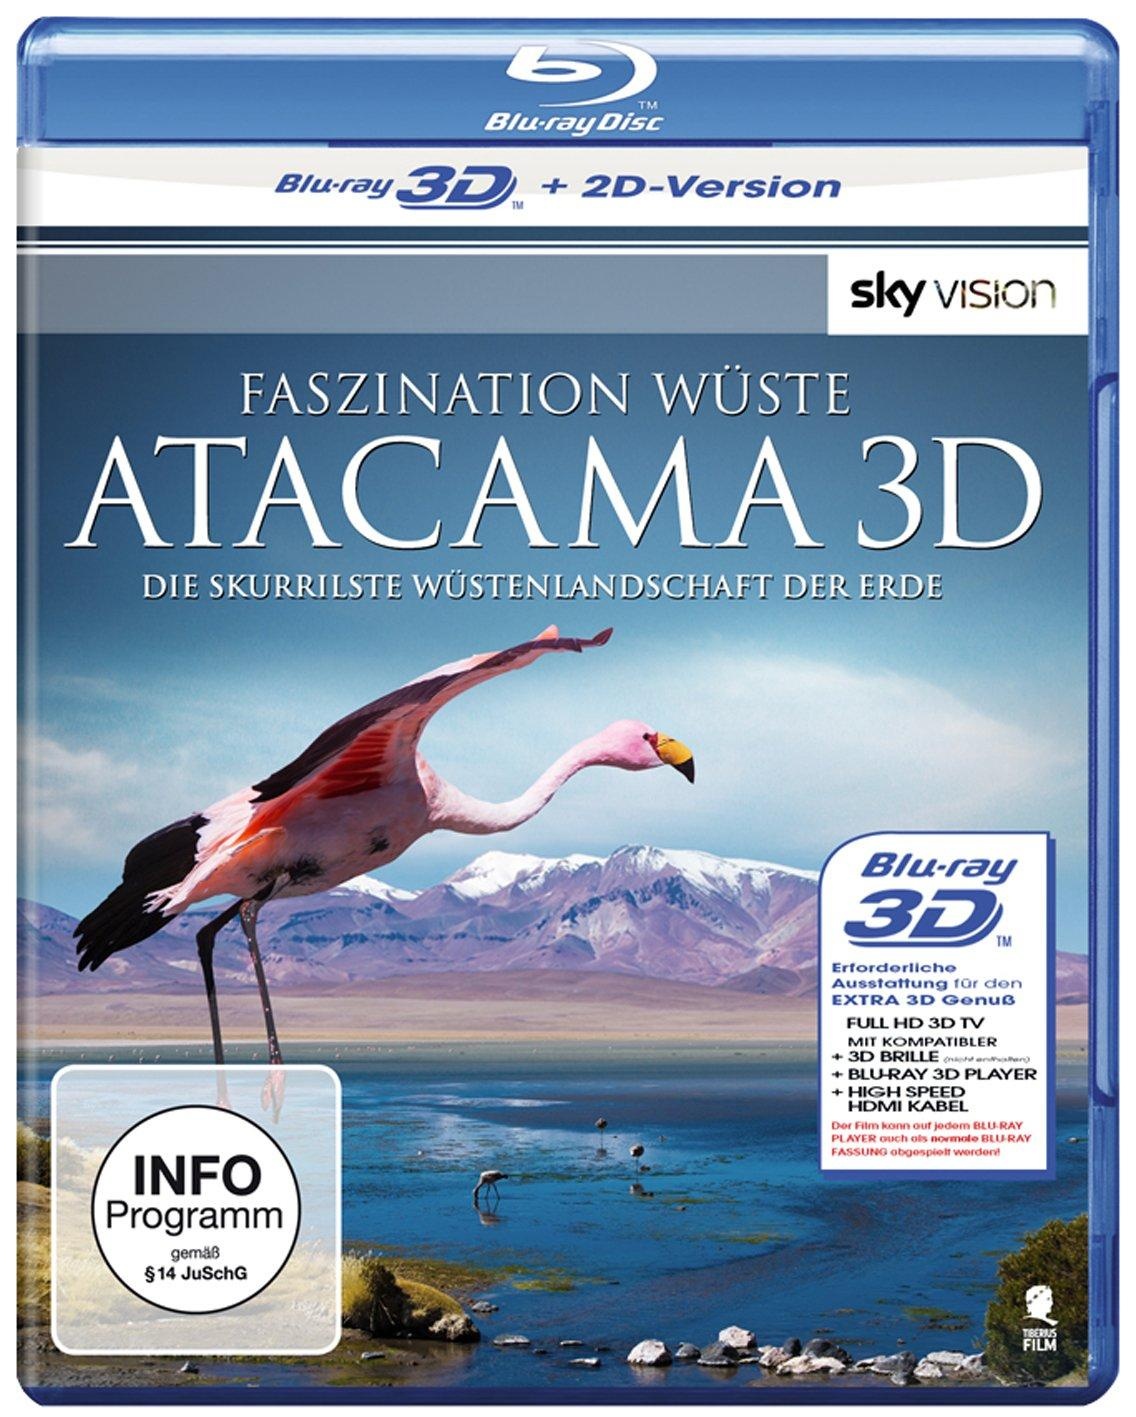 Faszination Wüste - Atacama: Die skurrilste Wüstenlandschaft der Erde (SKY VISION) [3D Blu-ray + 2D Version] (Neu differenzbesteuert)